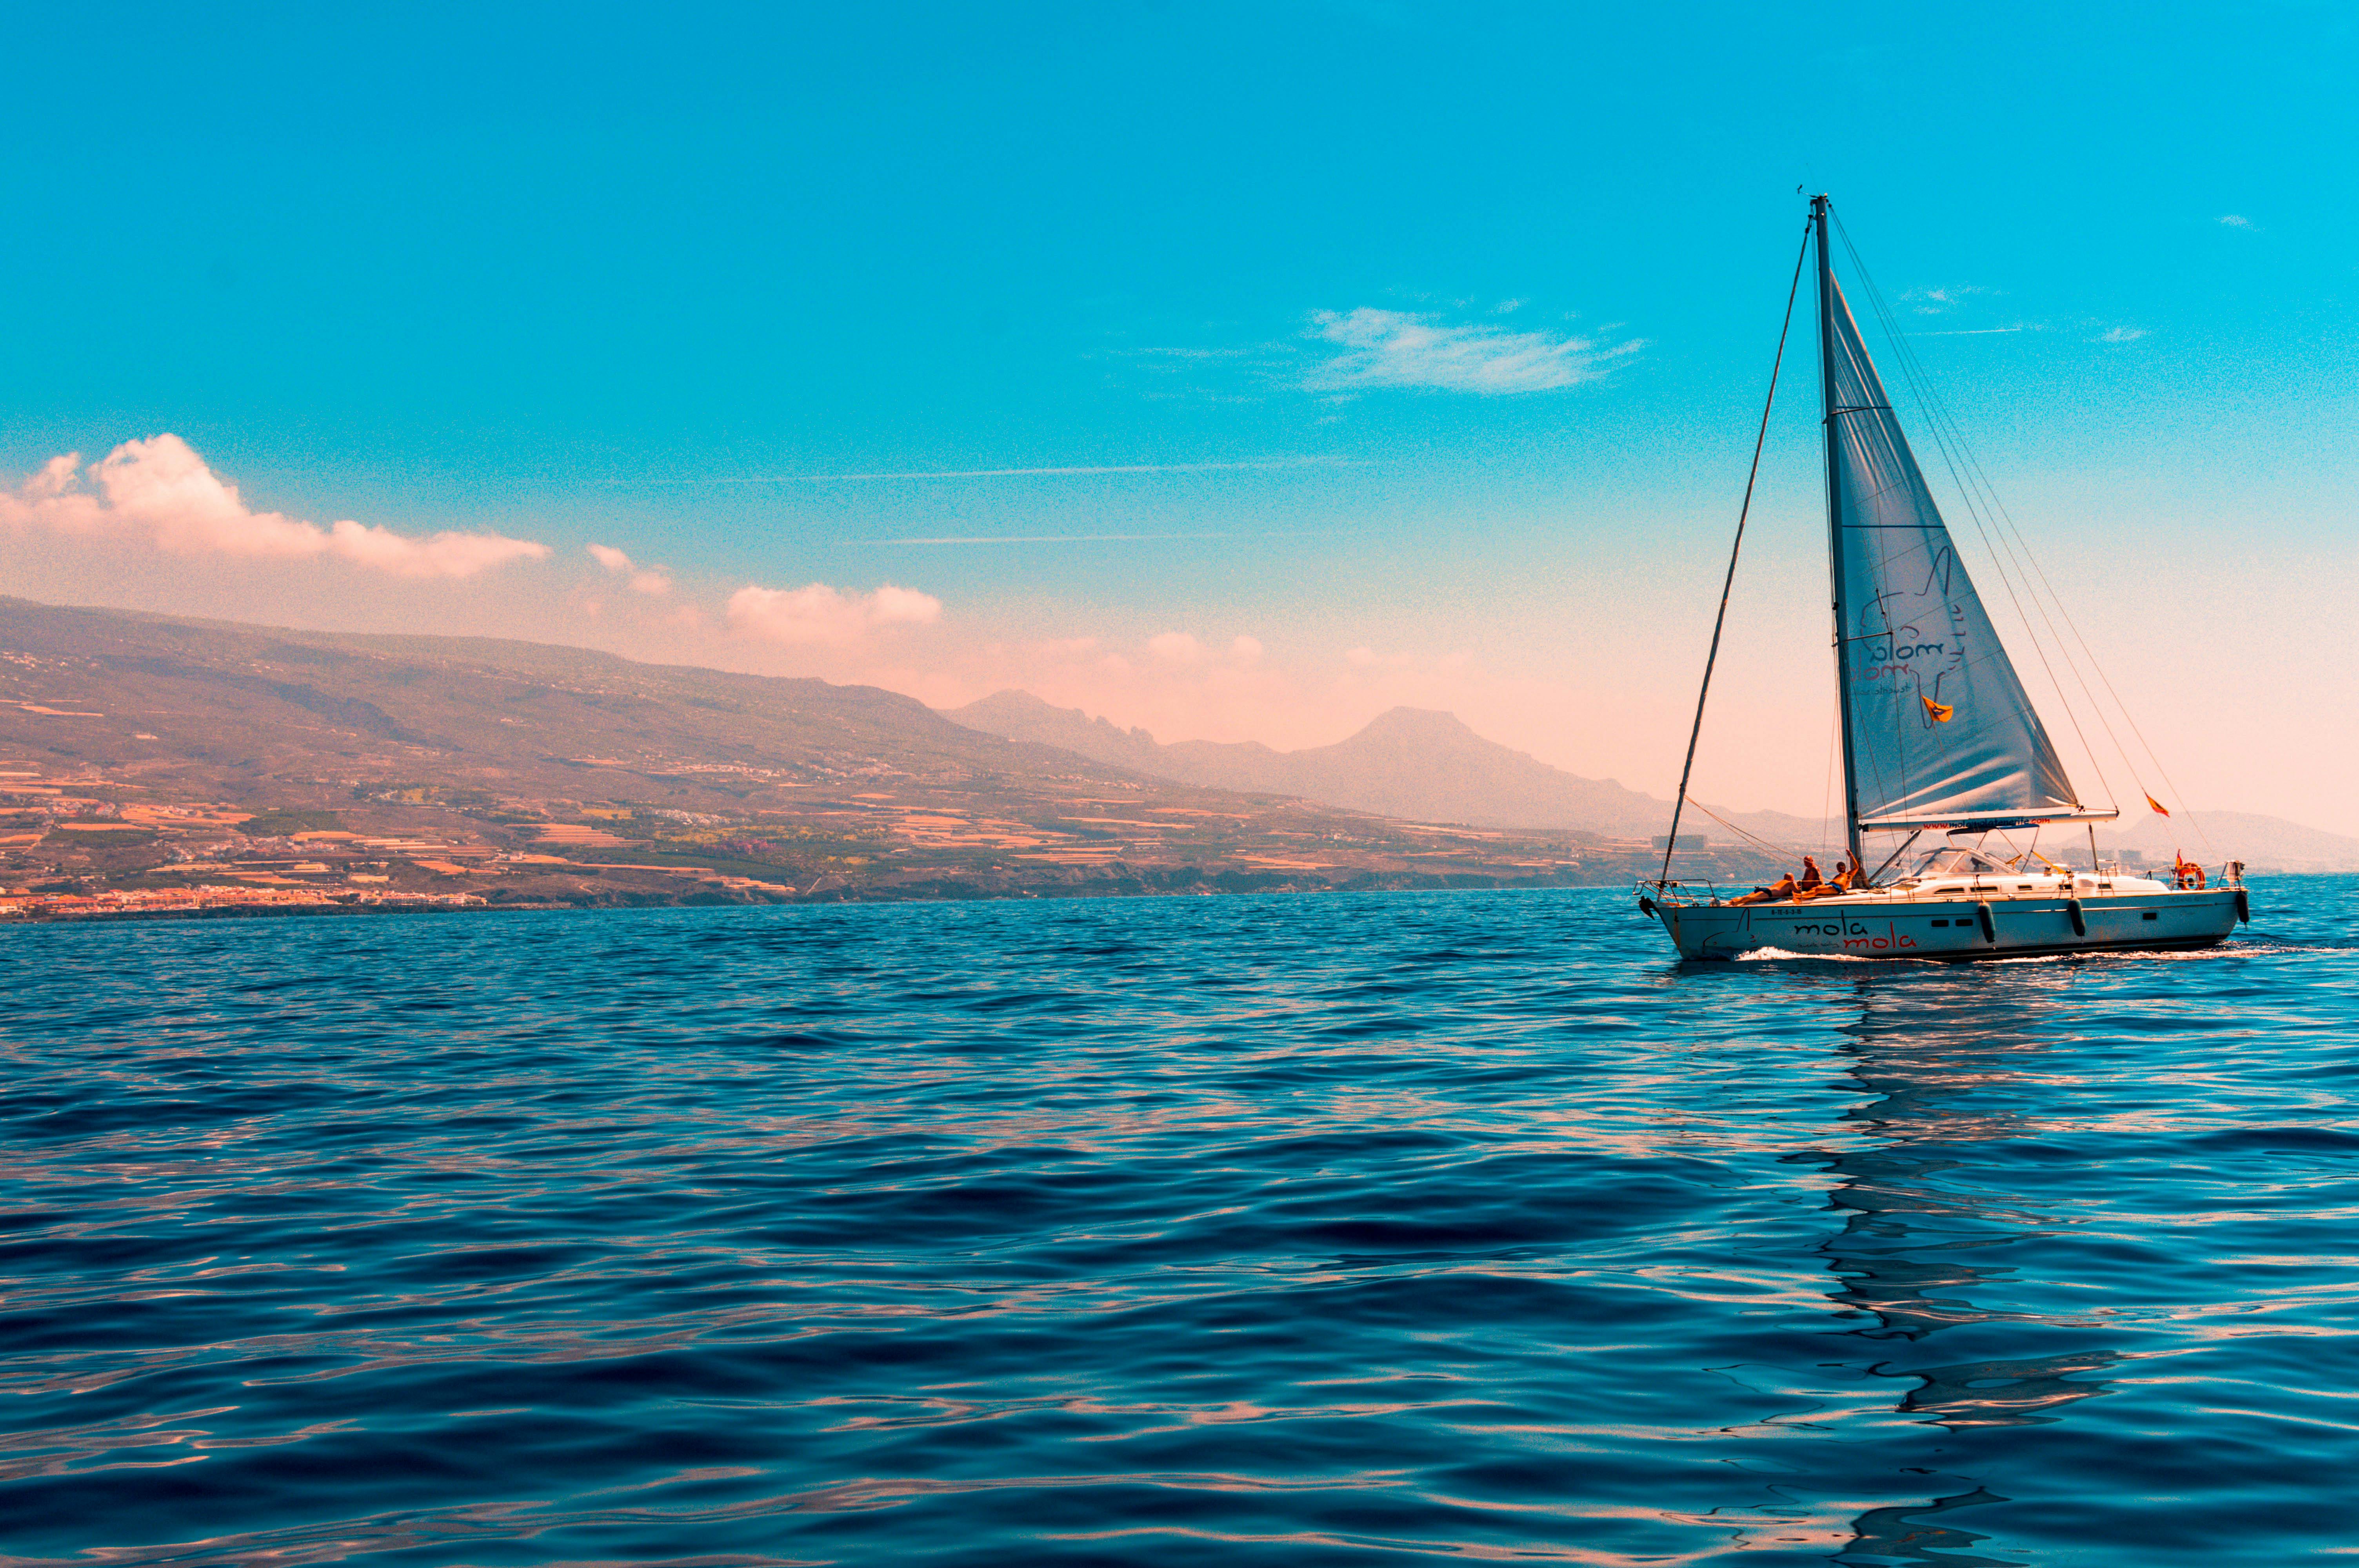 sailboat in ocean images